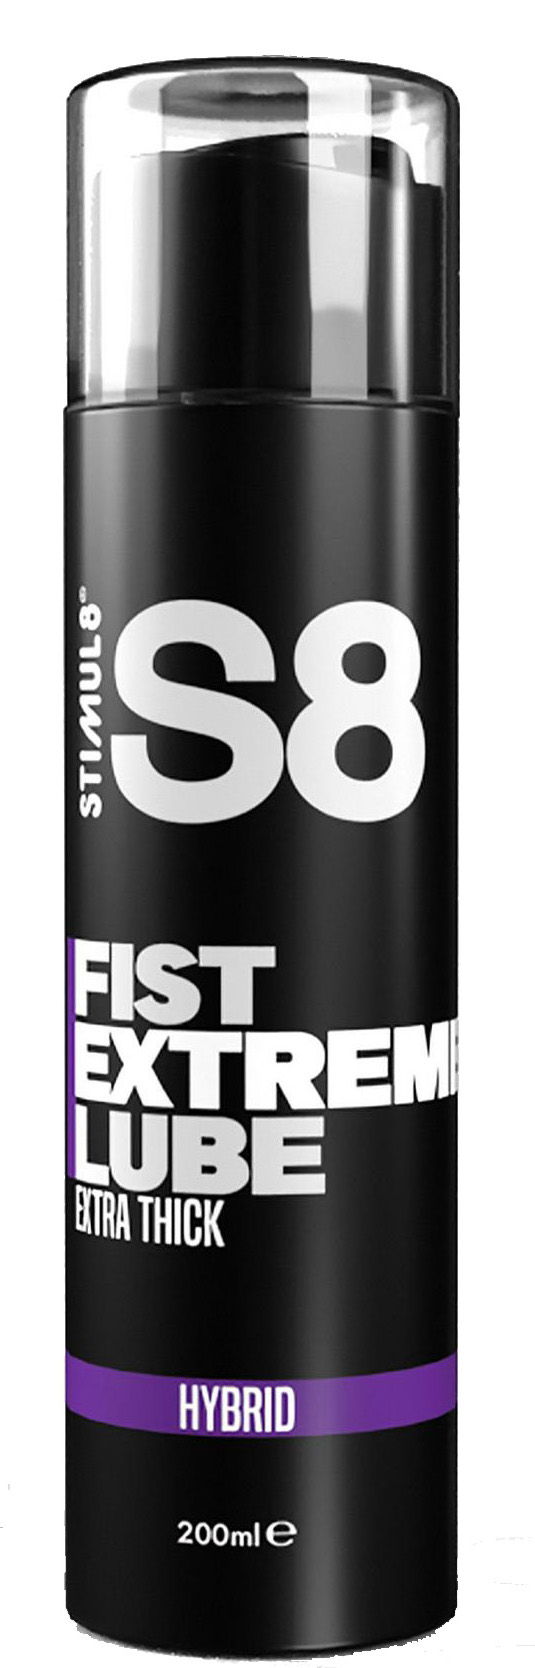 Гель-лубрикант для фистинга Stimul8 Extreme Fist на гибридной основе, 200 мл